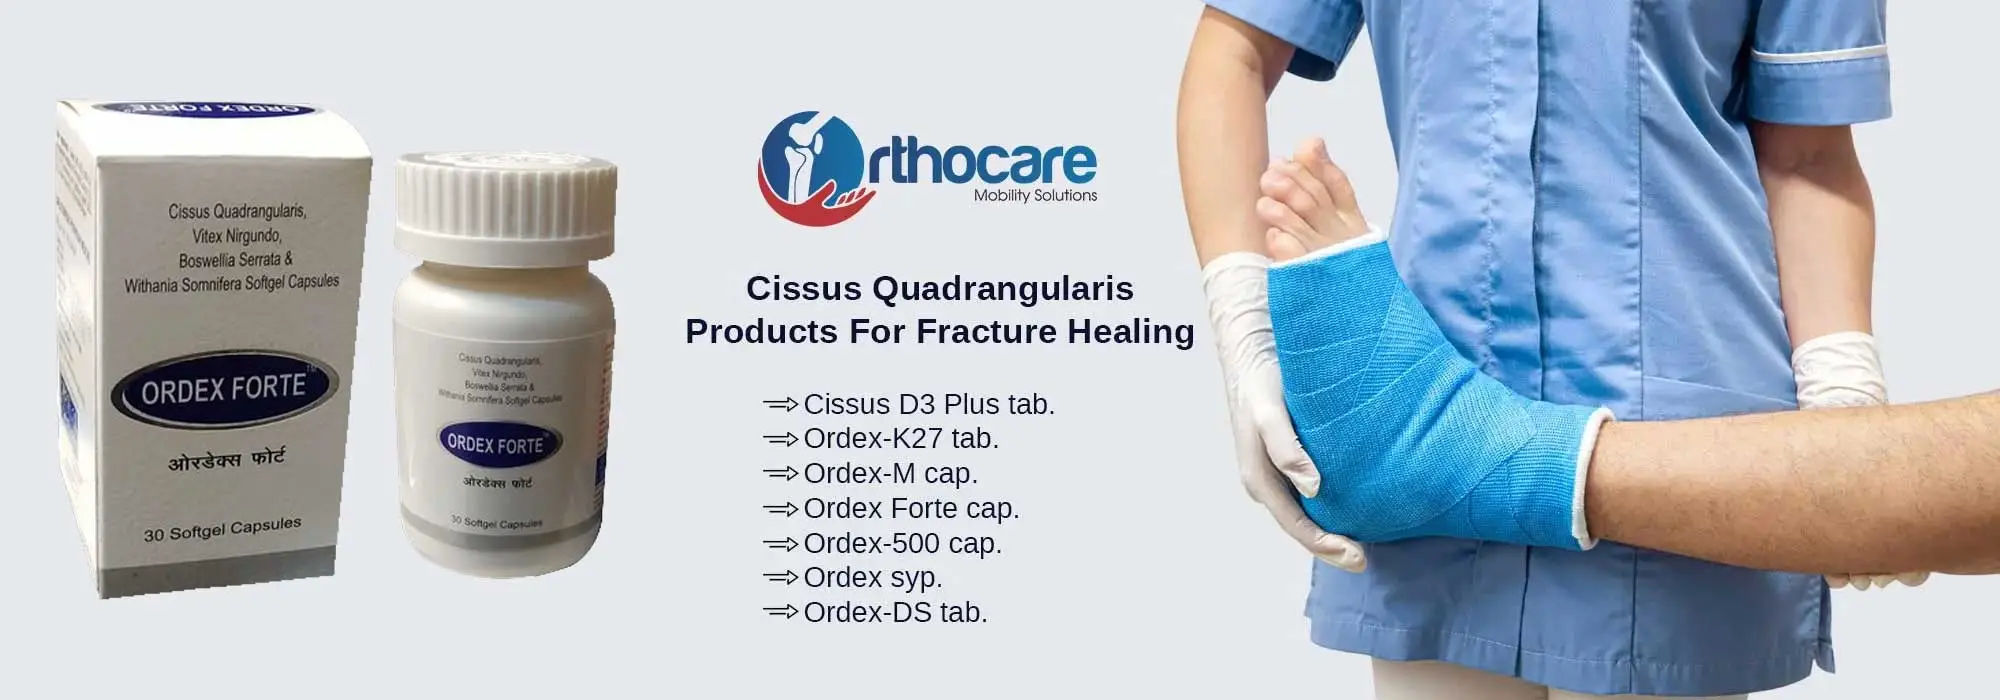 Cissus Quadrangularis Products For Fracture Healing Suppliers in Pratapgarh